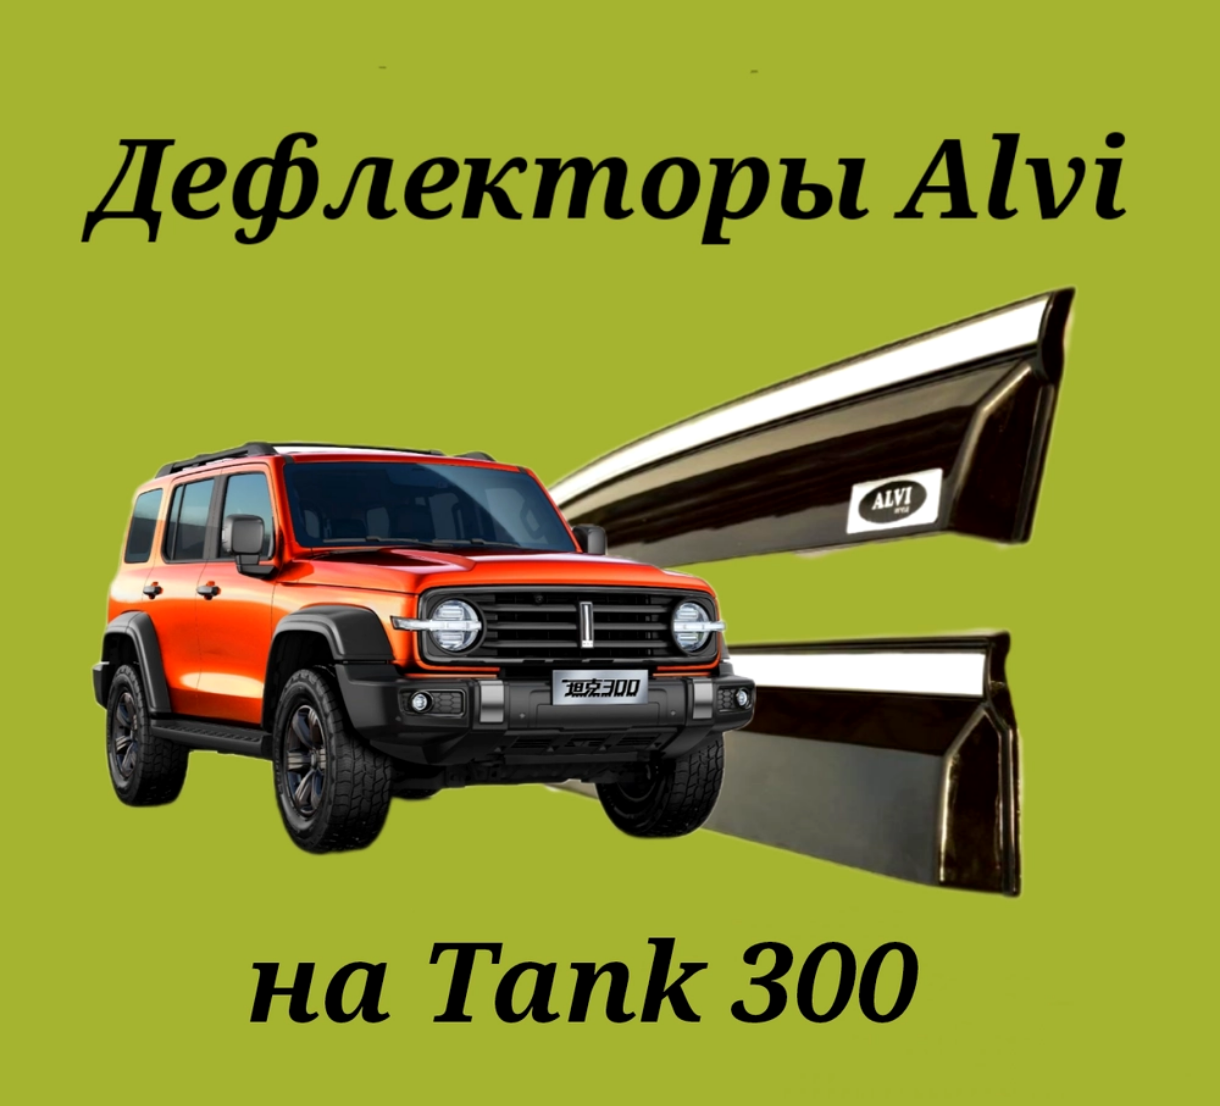 Дефлекторы Alvi на Tank 300 с молдингом из нержавейки